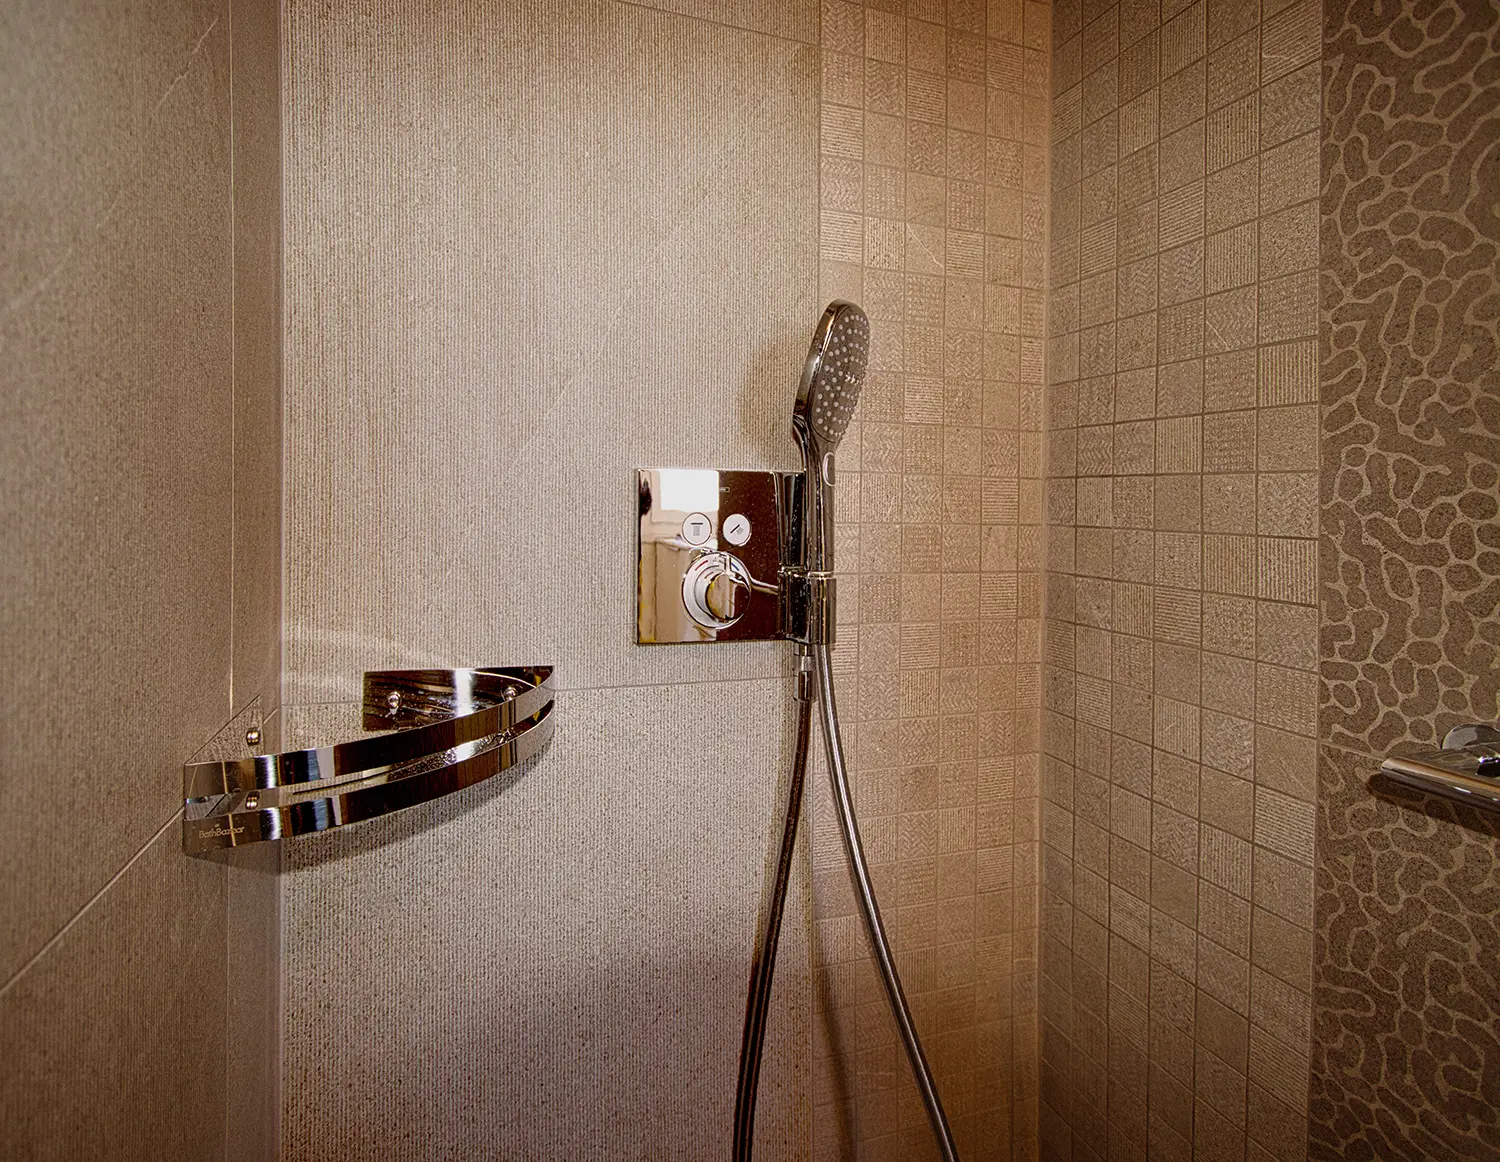 Photo de détail du revêtement et des accessoires de la douche ; projet de rénovation par Elles Interior Design studio.